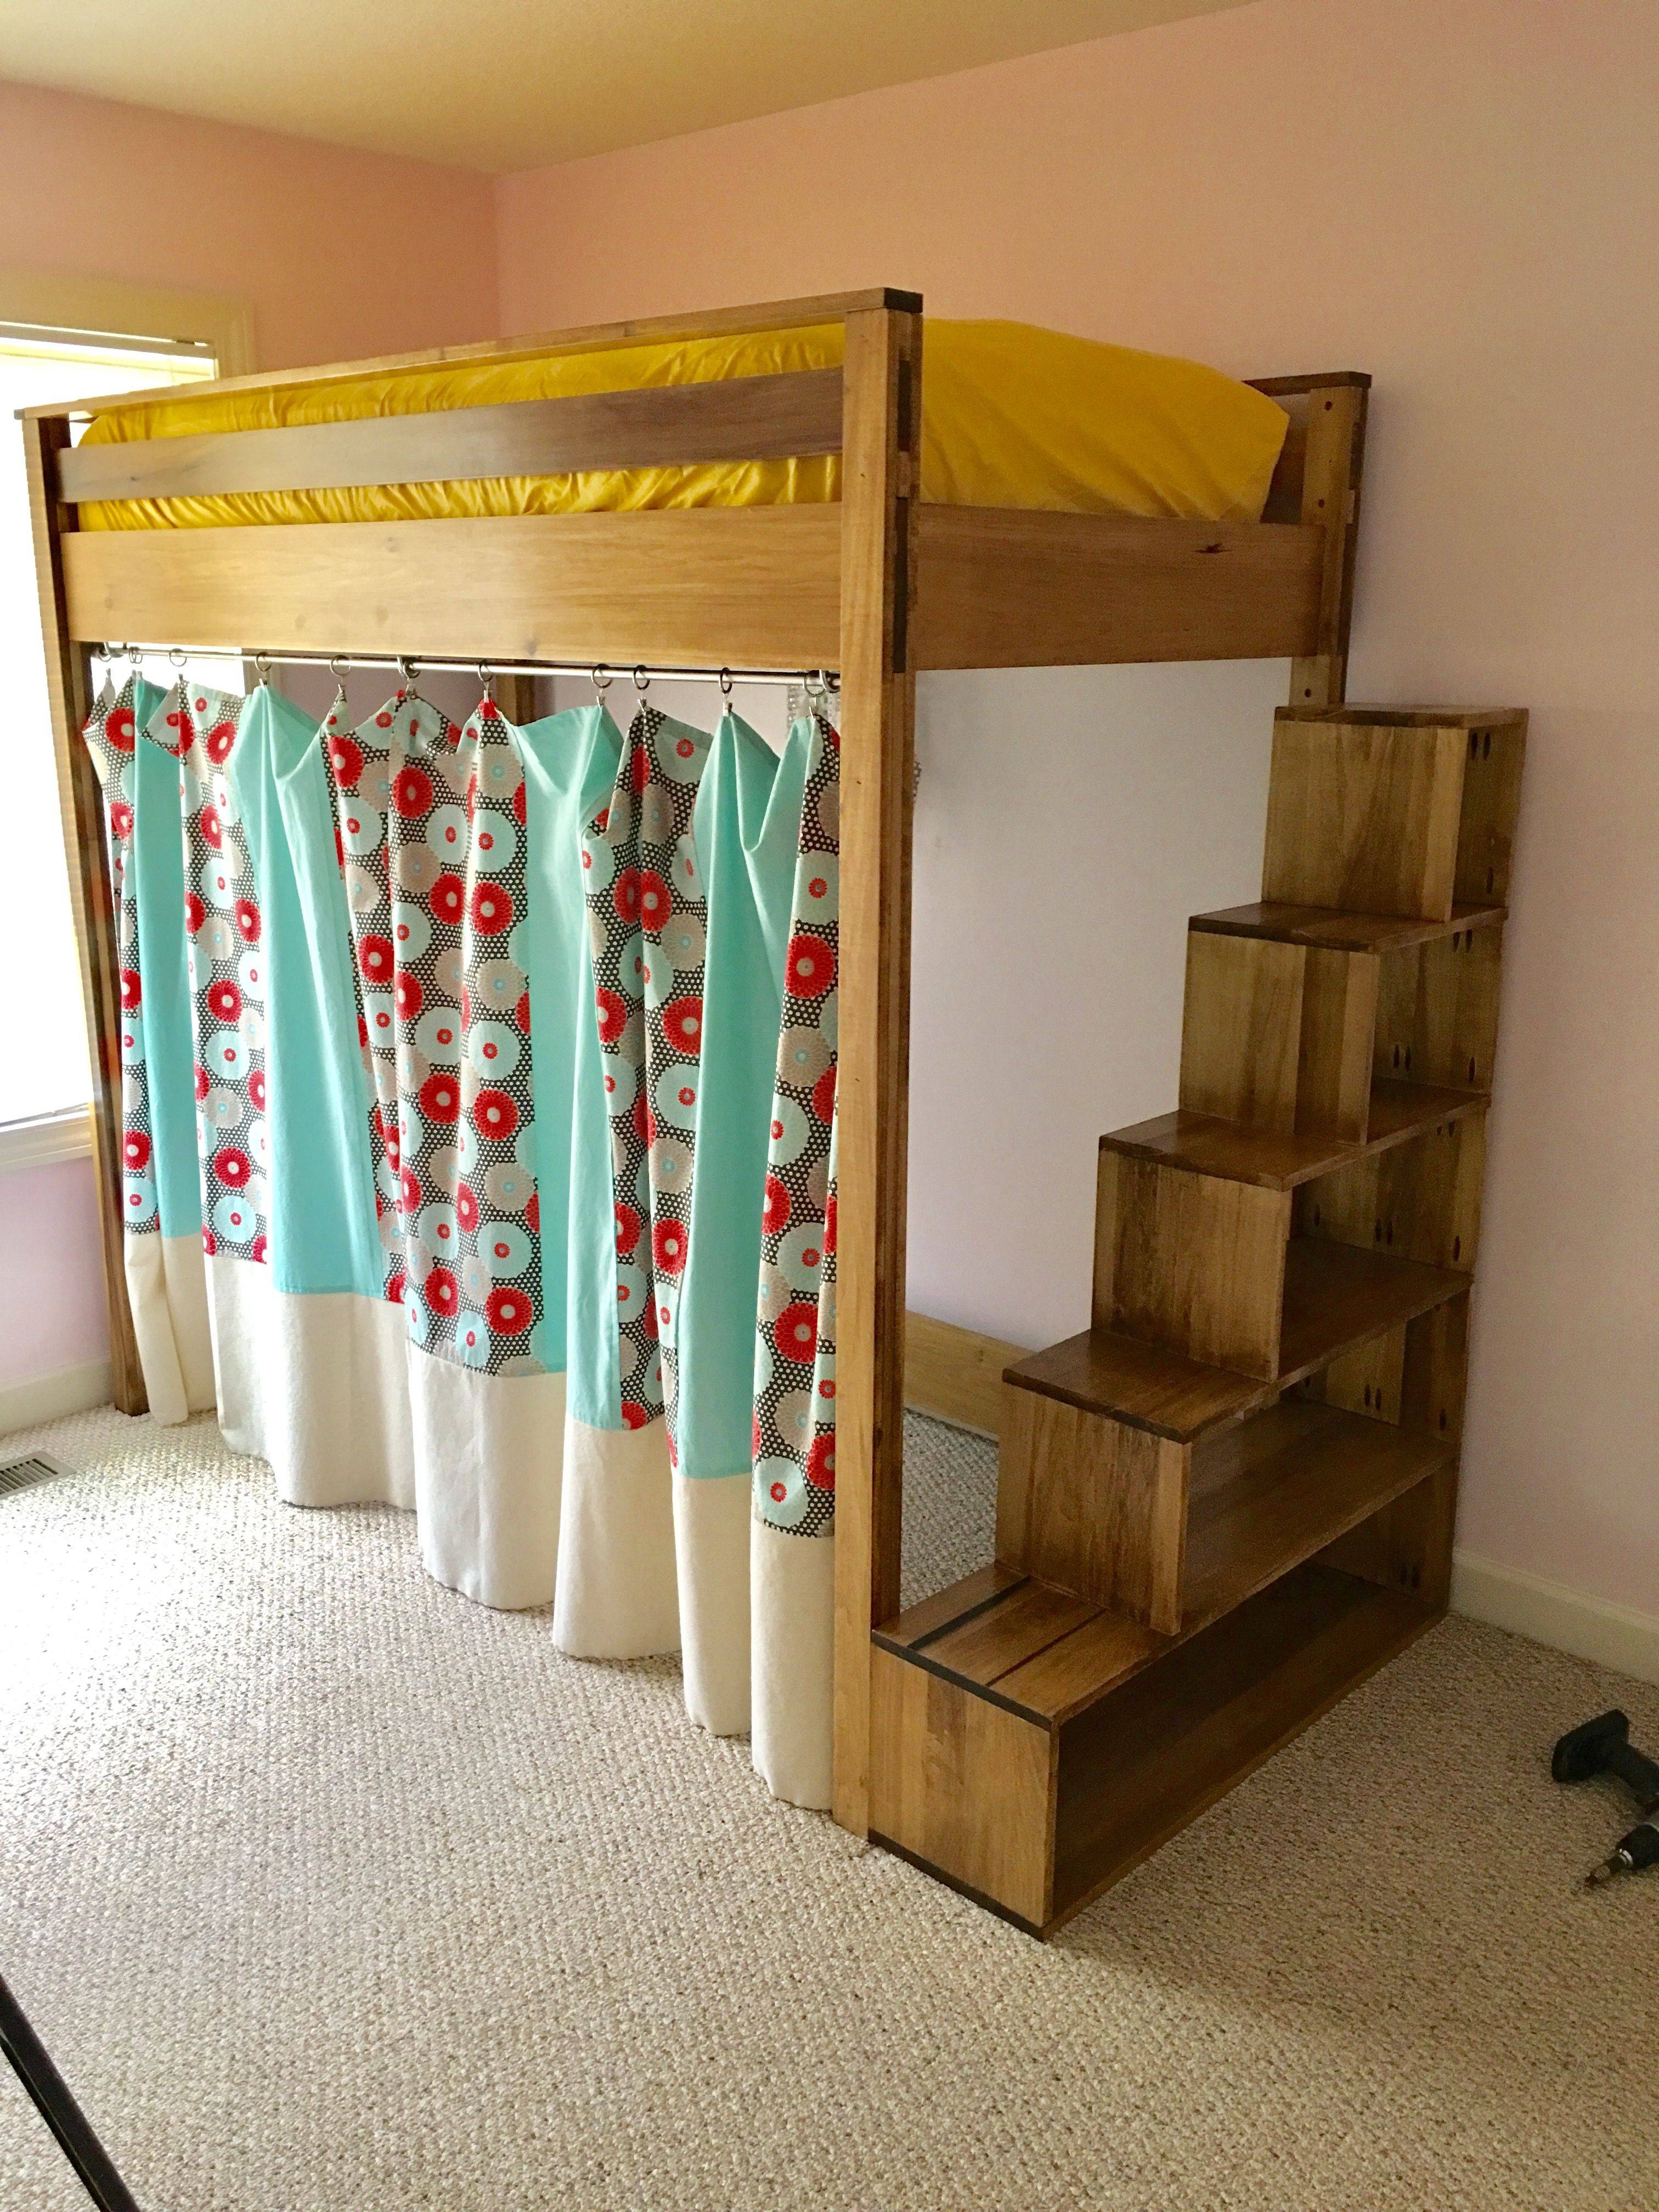 Лестница для двухъярусной кровати